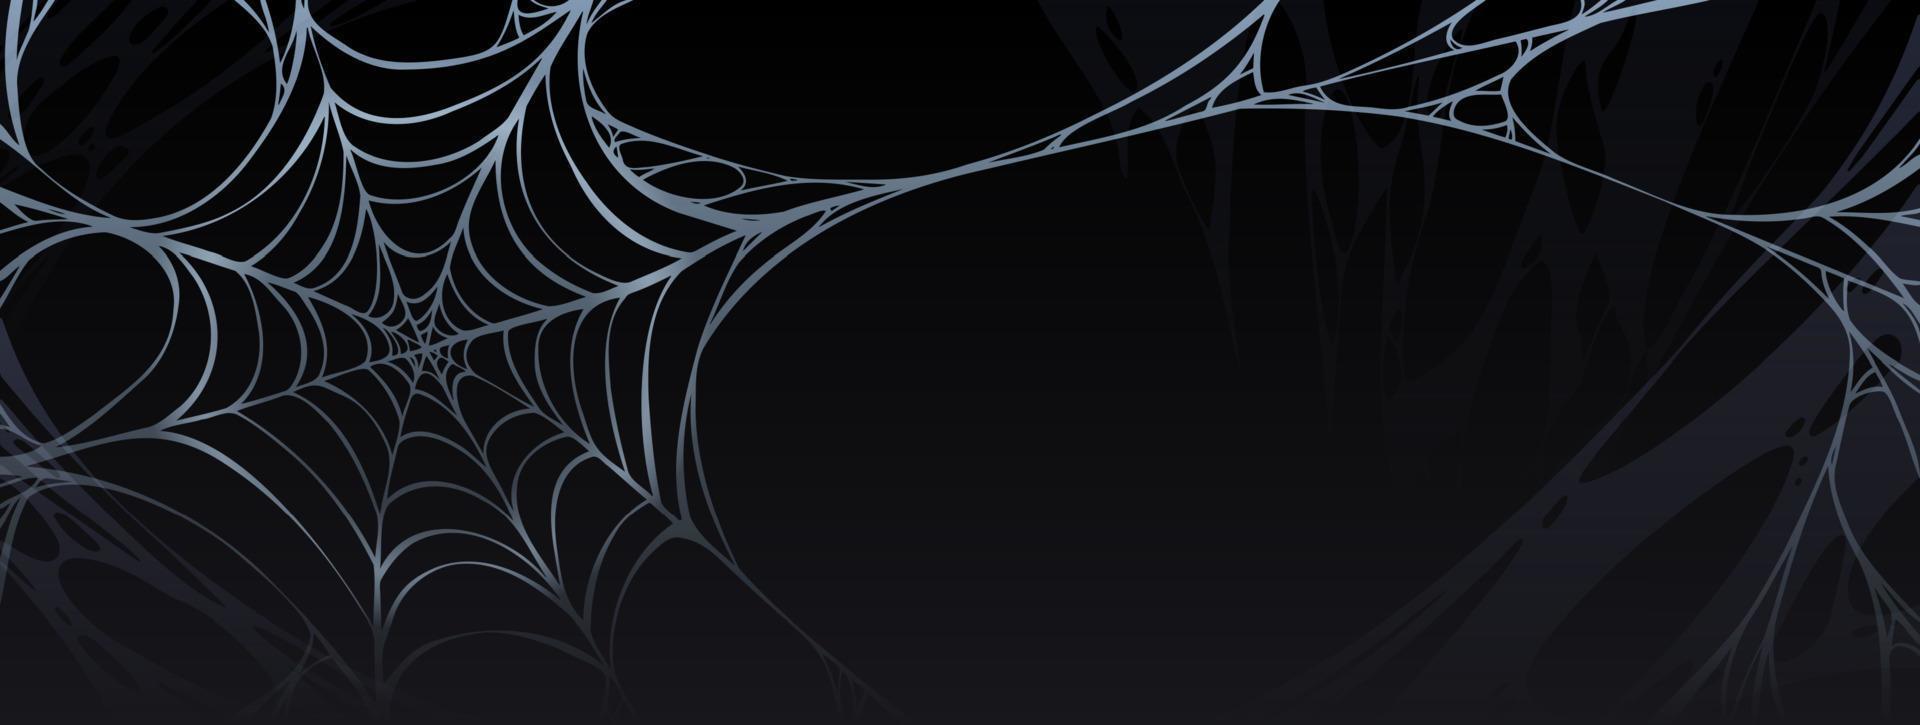 Gruseliges Halloween-Poster mit Spinnennetz vektor